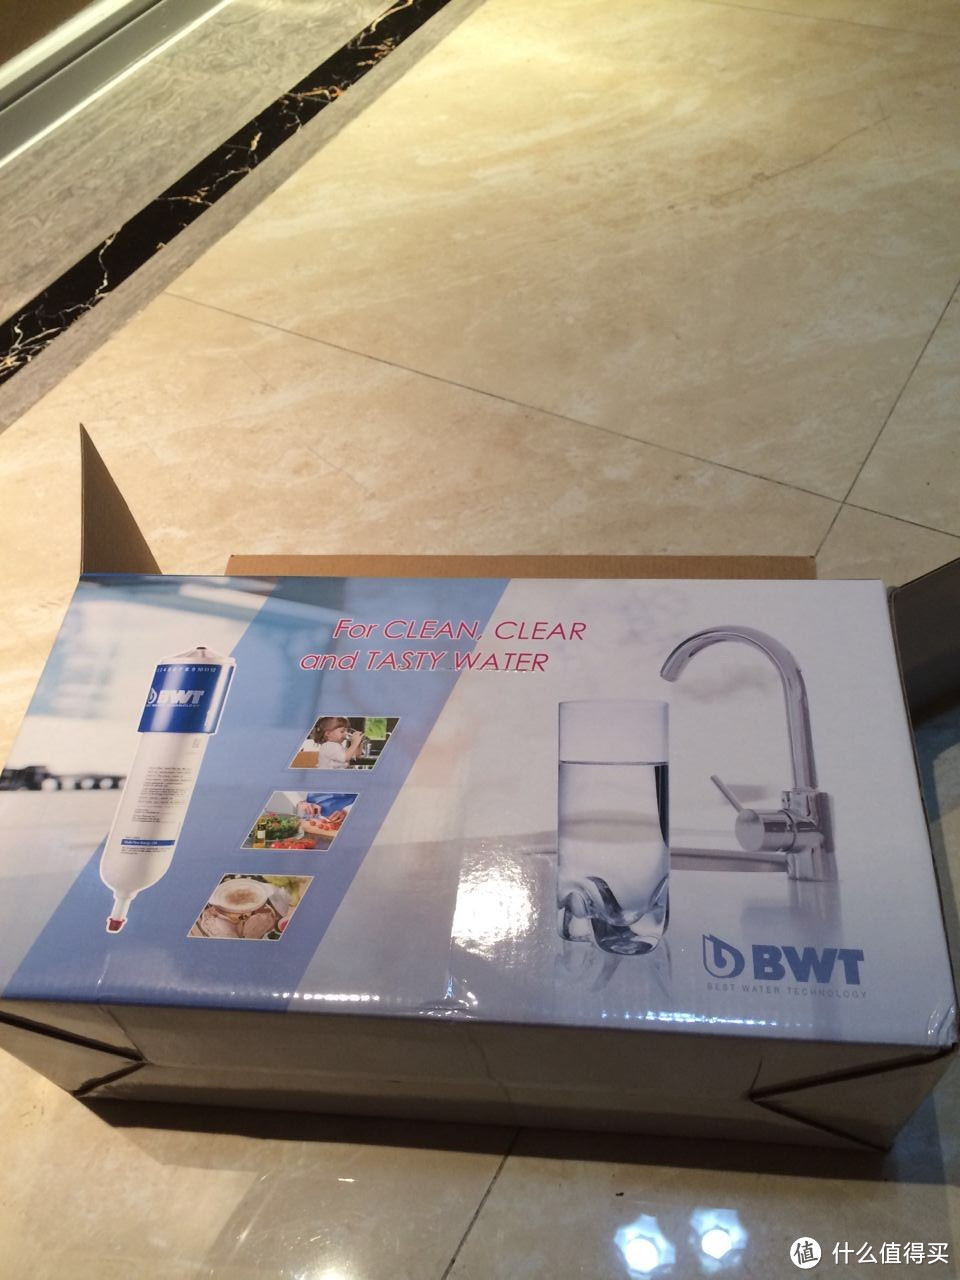 二手房的净水系统 — BWT的前置+末端